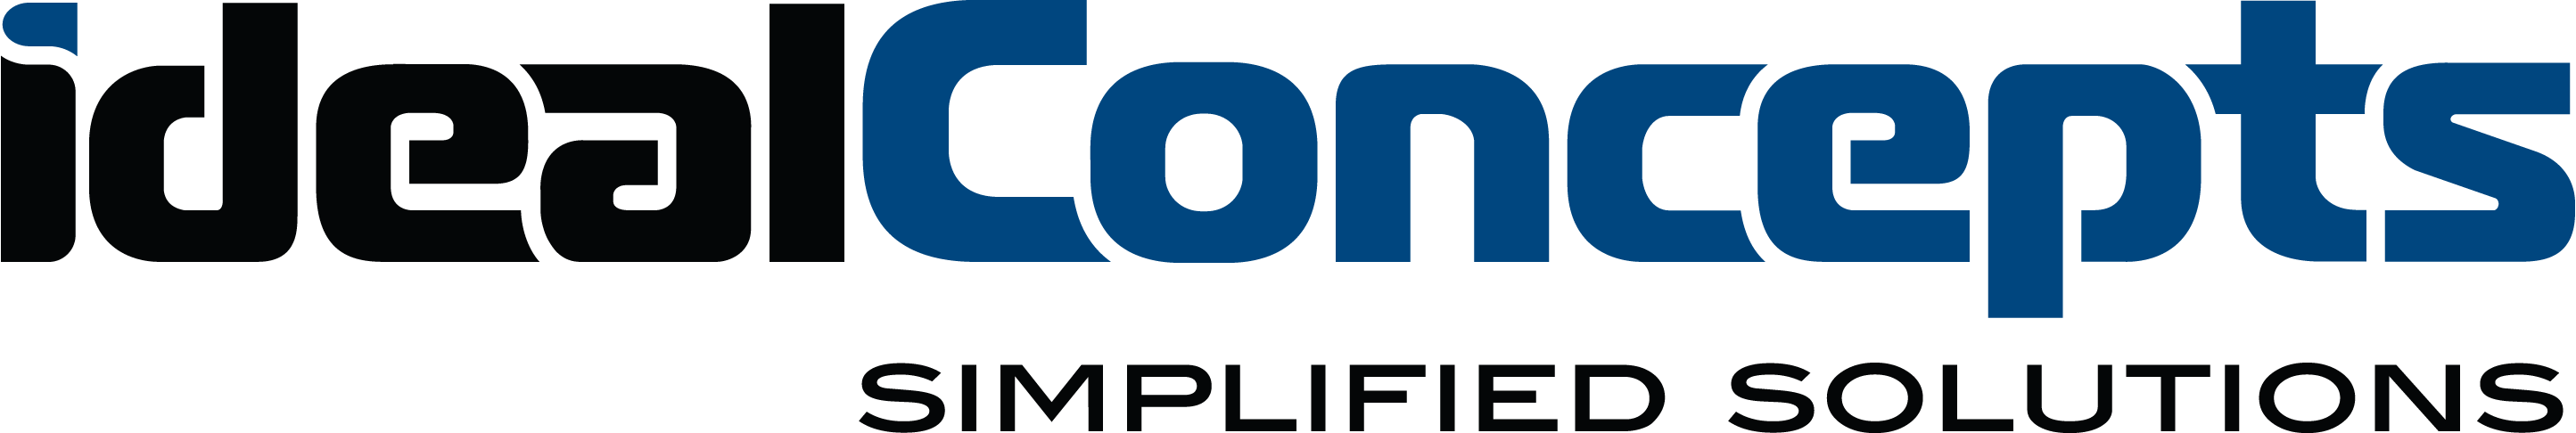 Ideal Concepts, Inc. logo